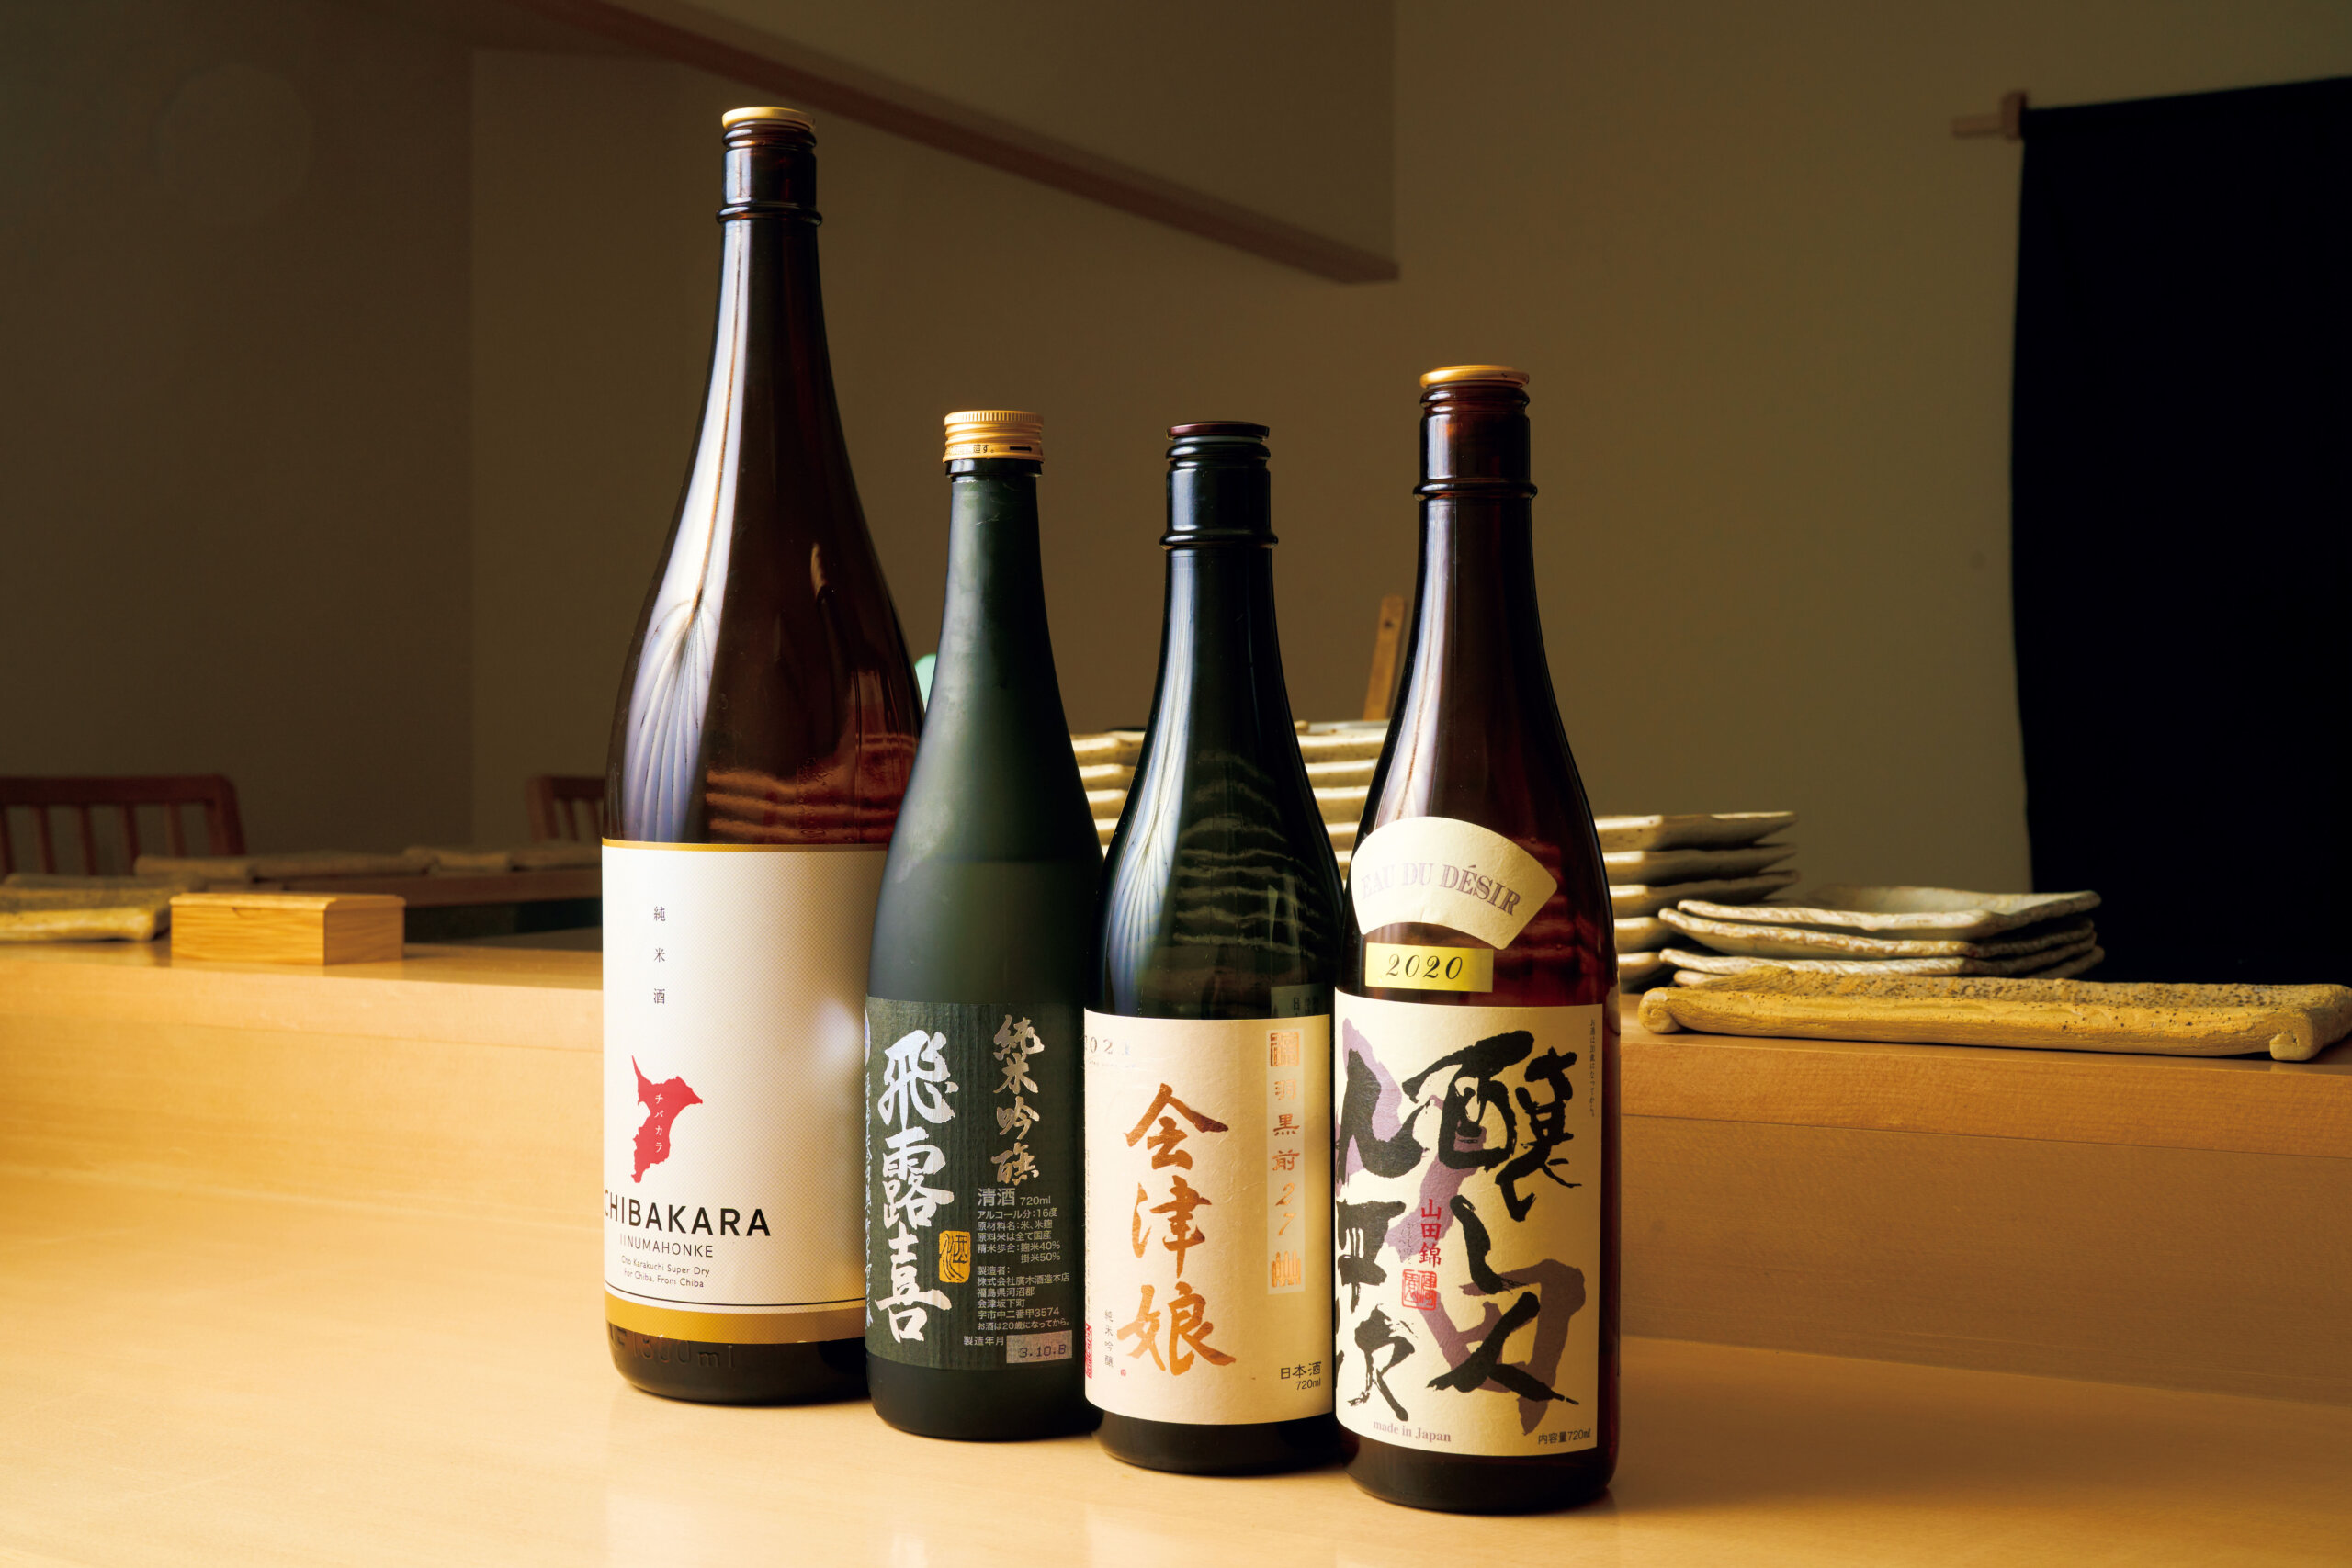 焼酎、ワインも揃えるが、一番人気は日本酒だとか。様々な名酒に加え、郷里・千葉のものも